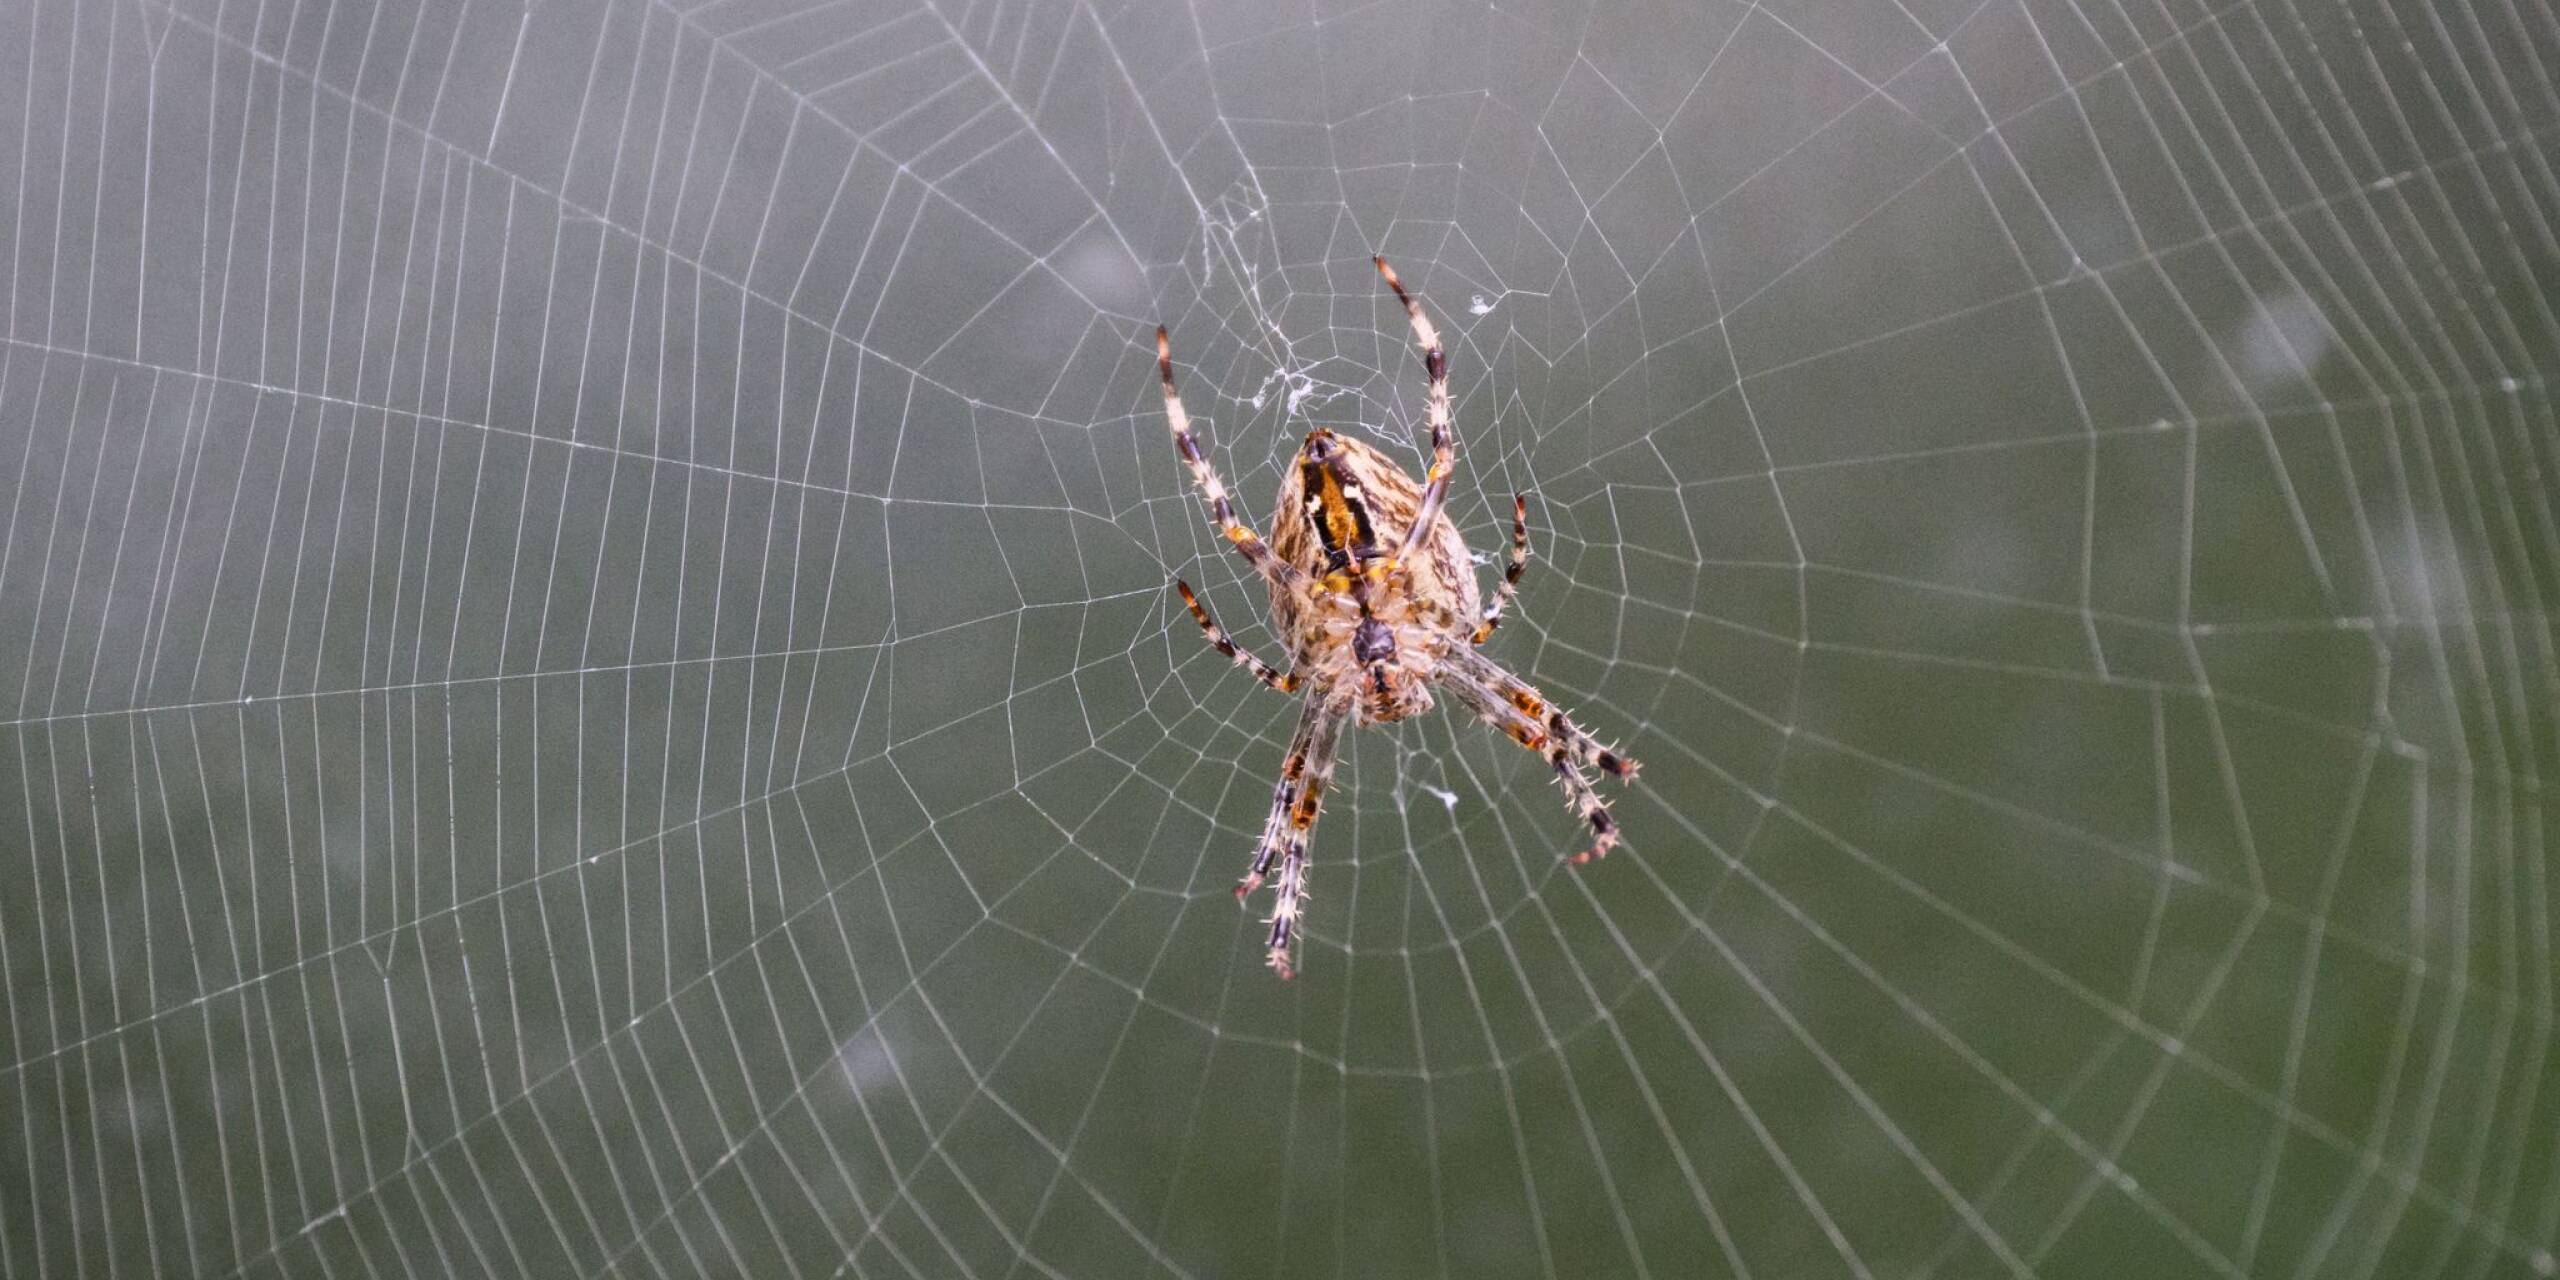 Bei vielen läuft bei dem Anblick dieser Kreuzspinne ein Schauer über den Rücken. Sie hängt in ihrem selbstgebautem Spinnennetz.